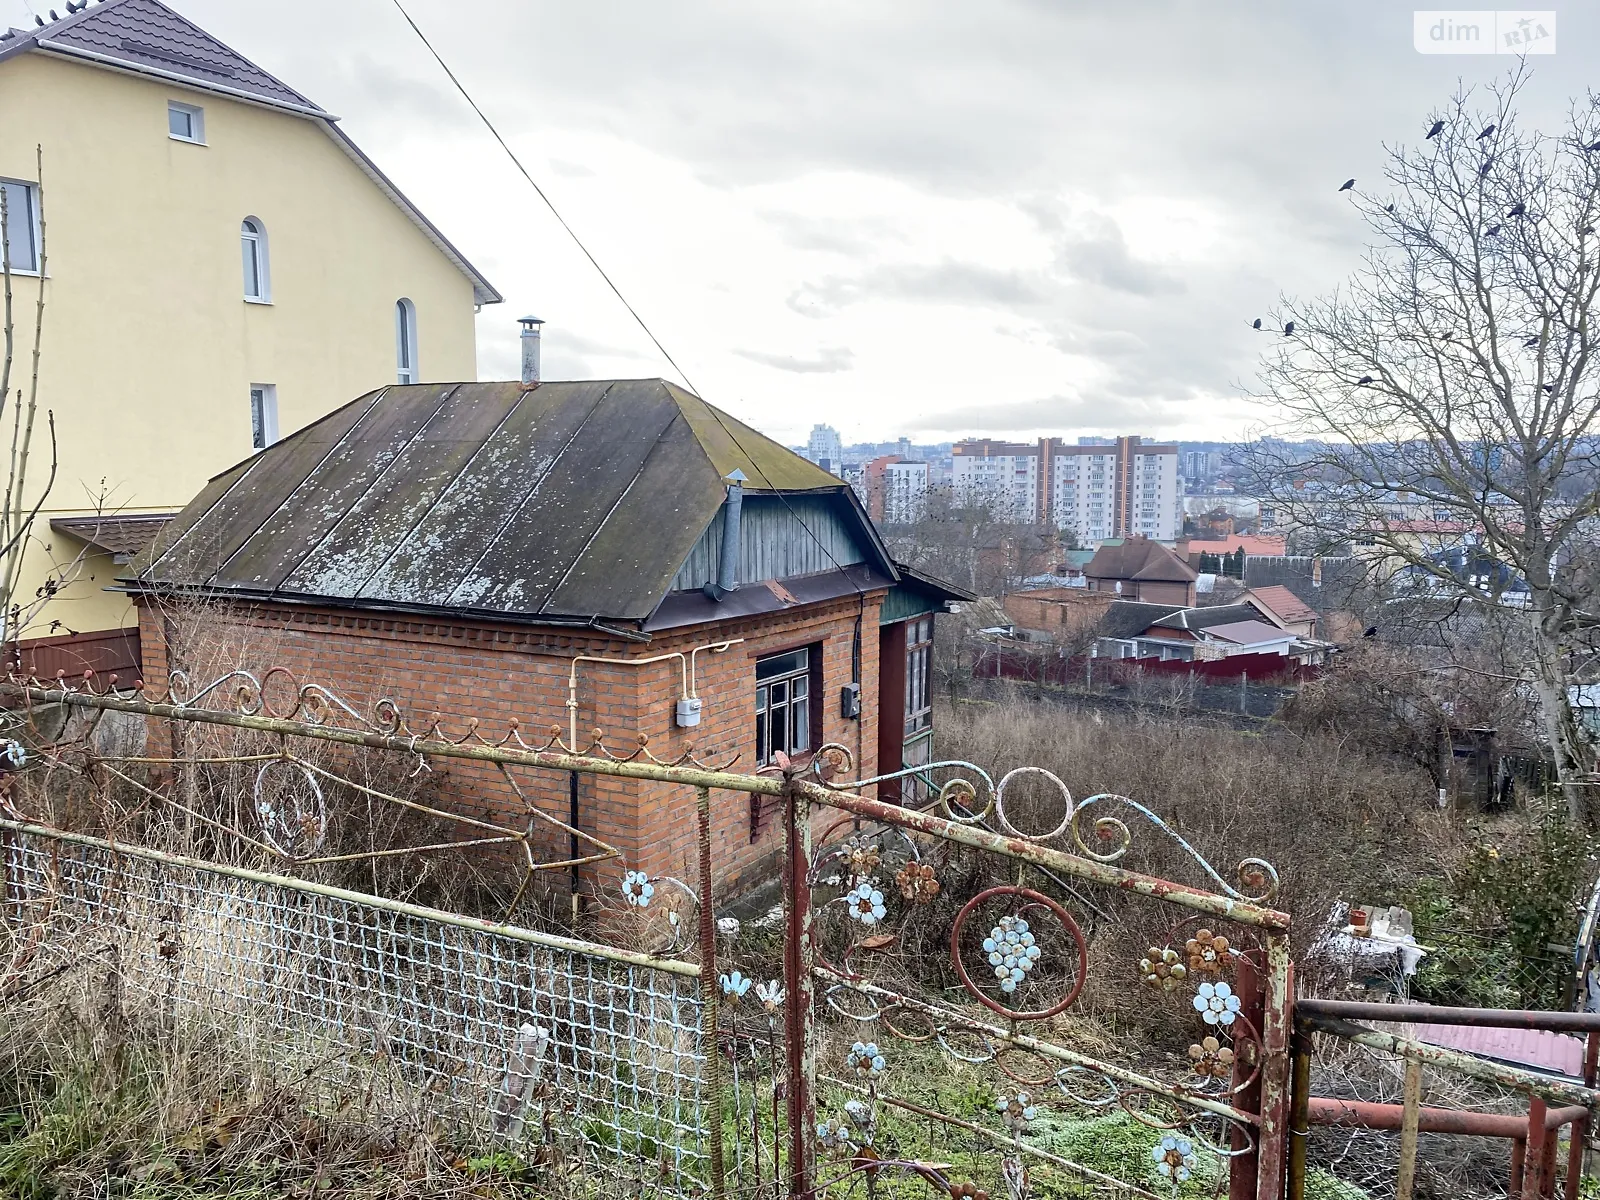 Продается земельный участок 6 соток в Хмельницкой области - фото 3